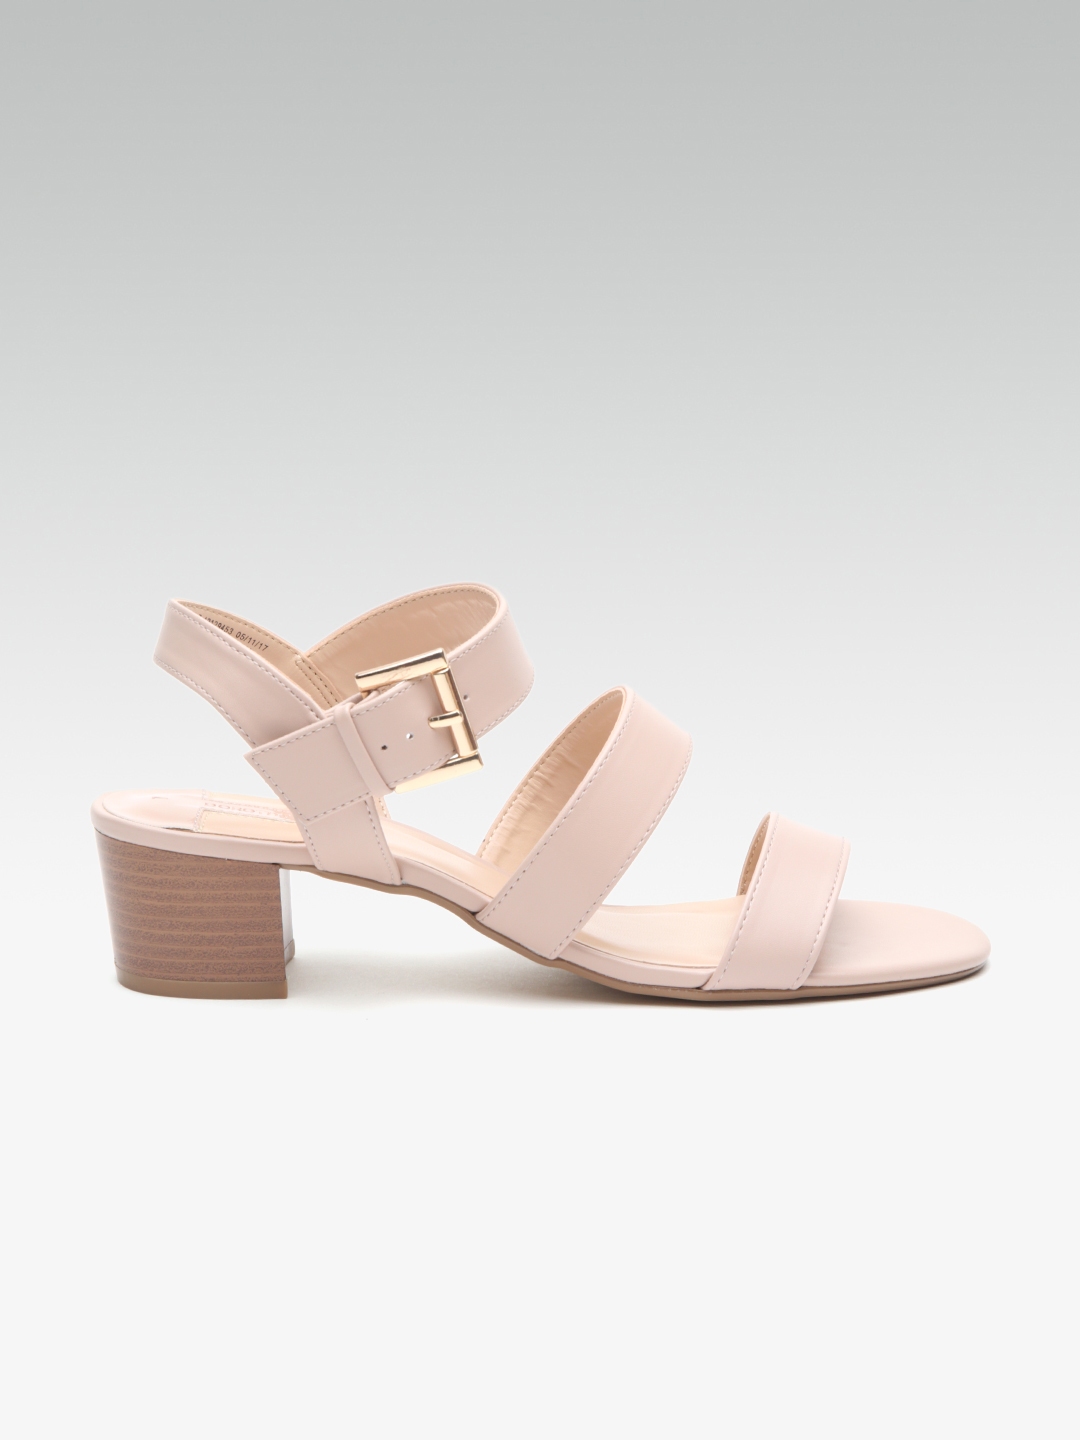 Buy DOROTHY PERKINS Women Pink Solid Sandals - Heels for Women 2502877 ...